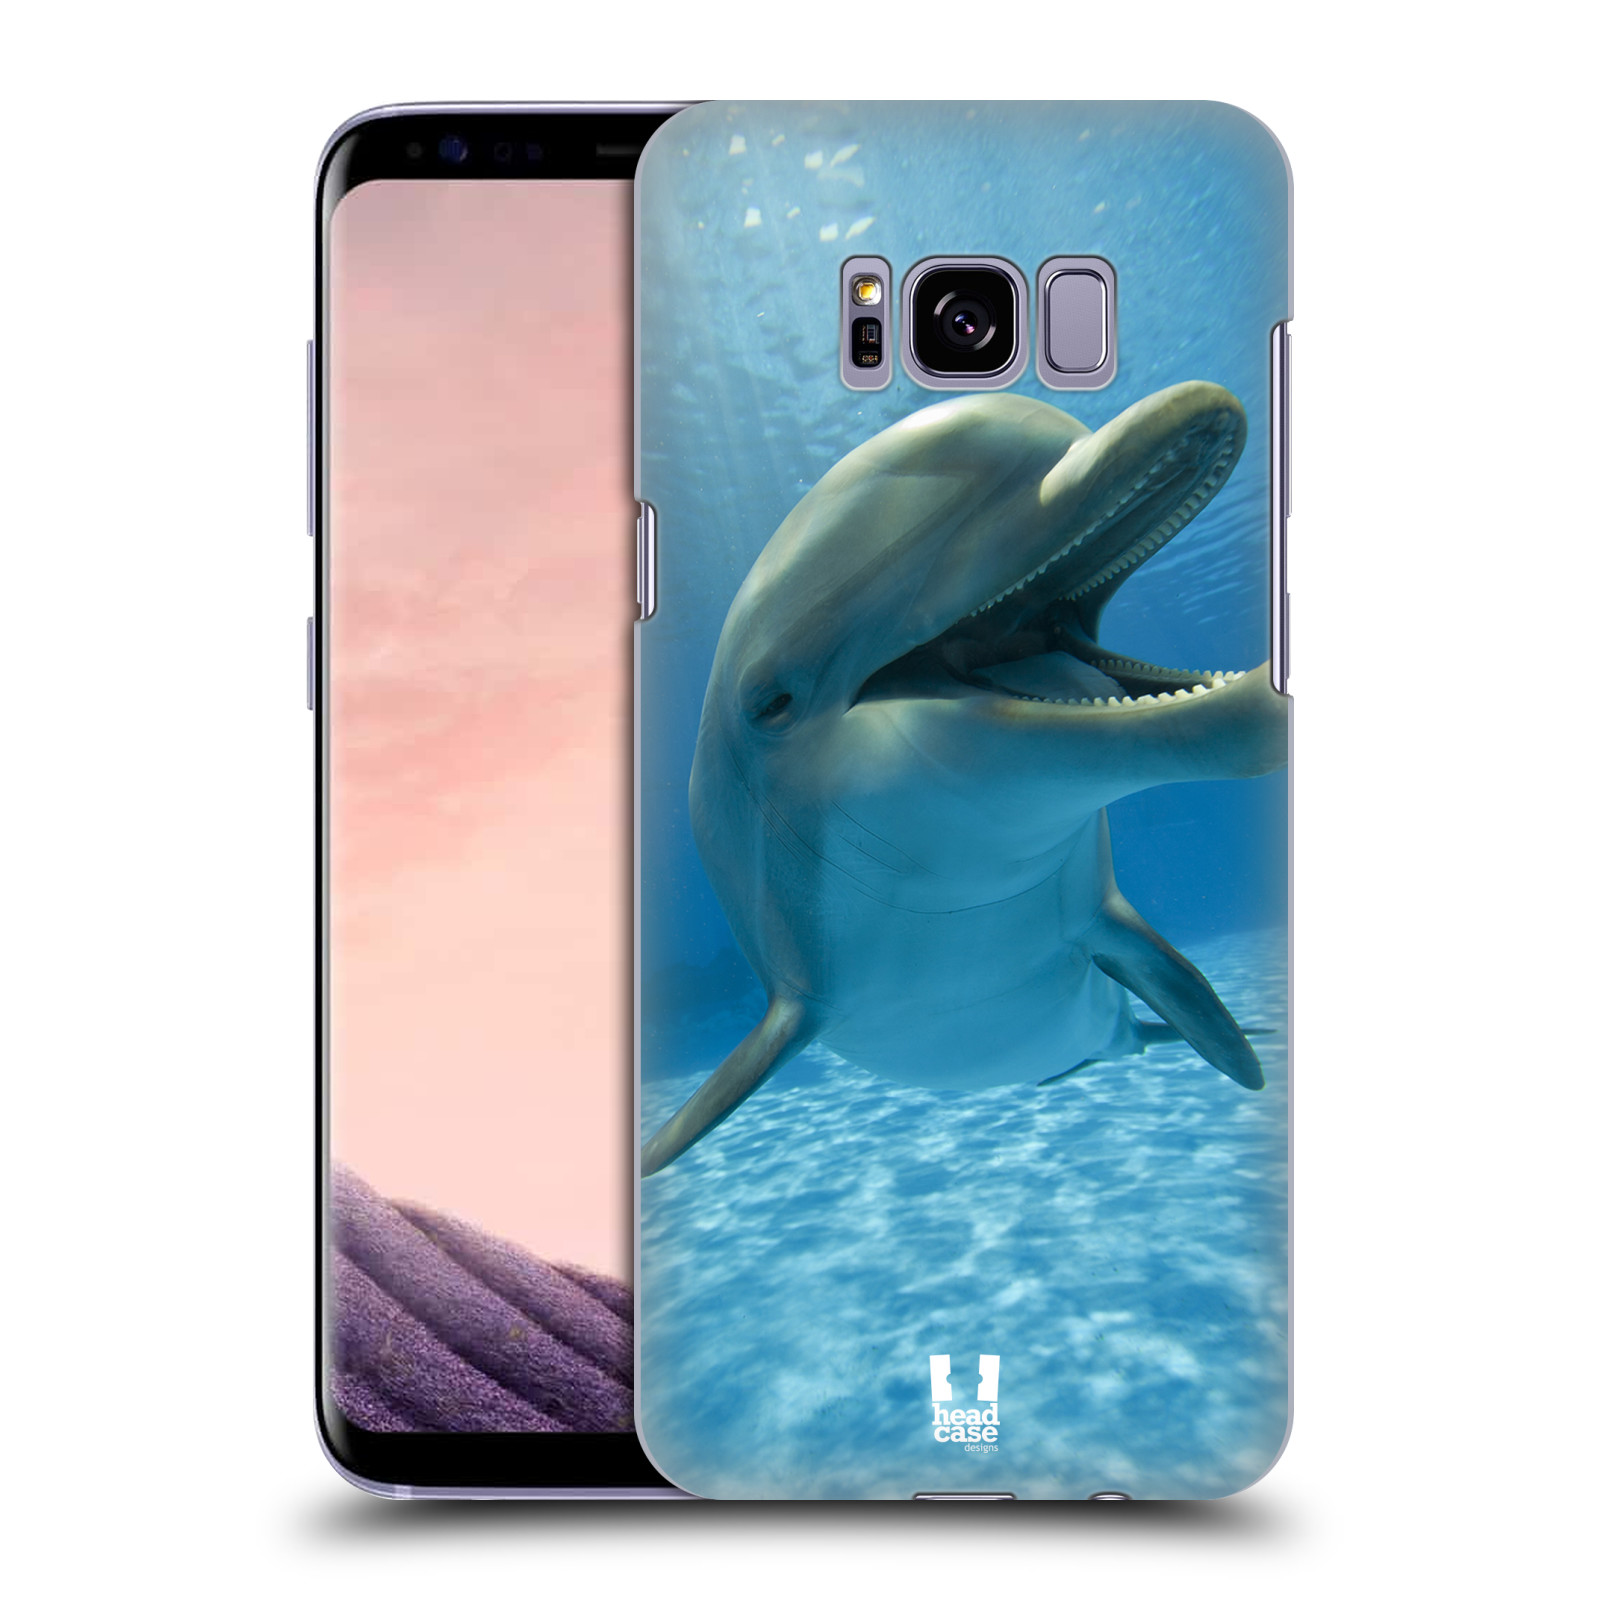 Zadní obal pro mobil Samsung Galaxy S8 PLUS - HEAD CASE - Svět zvířat delfín v moři